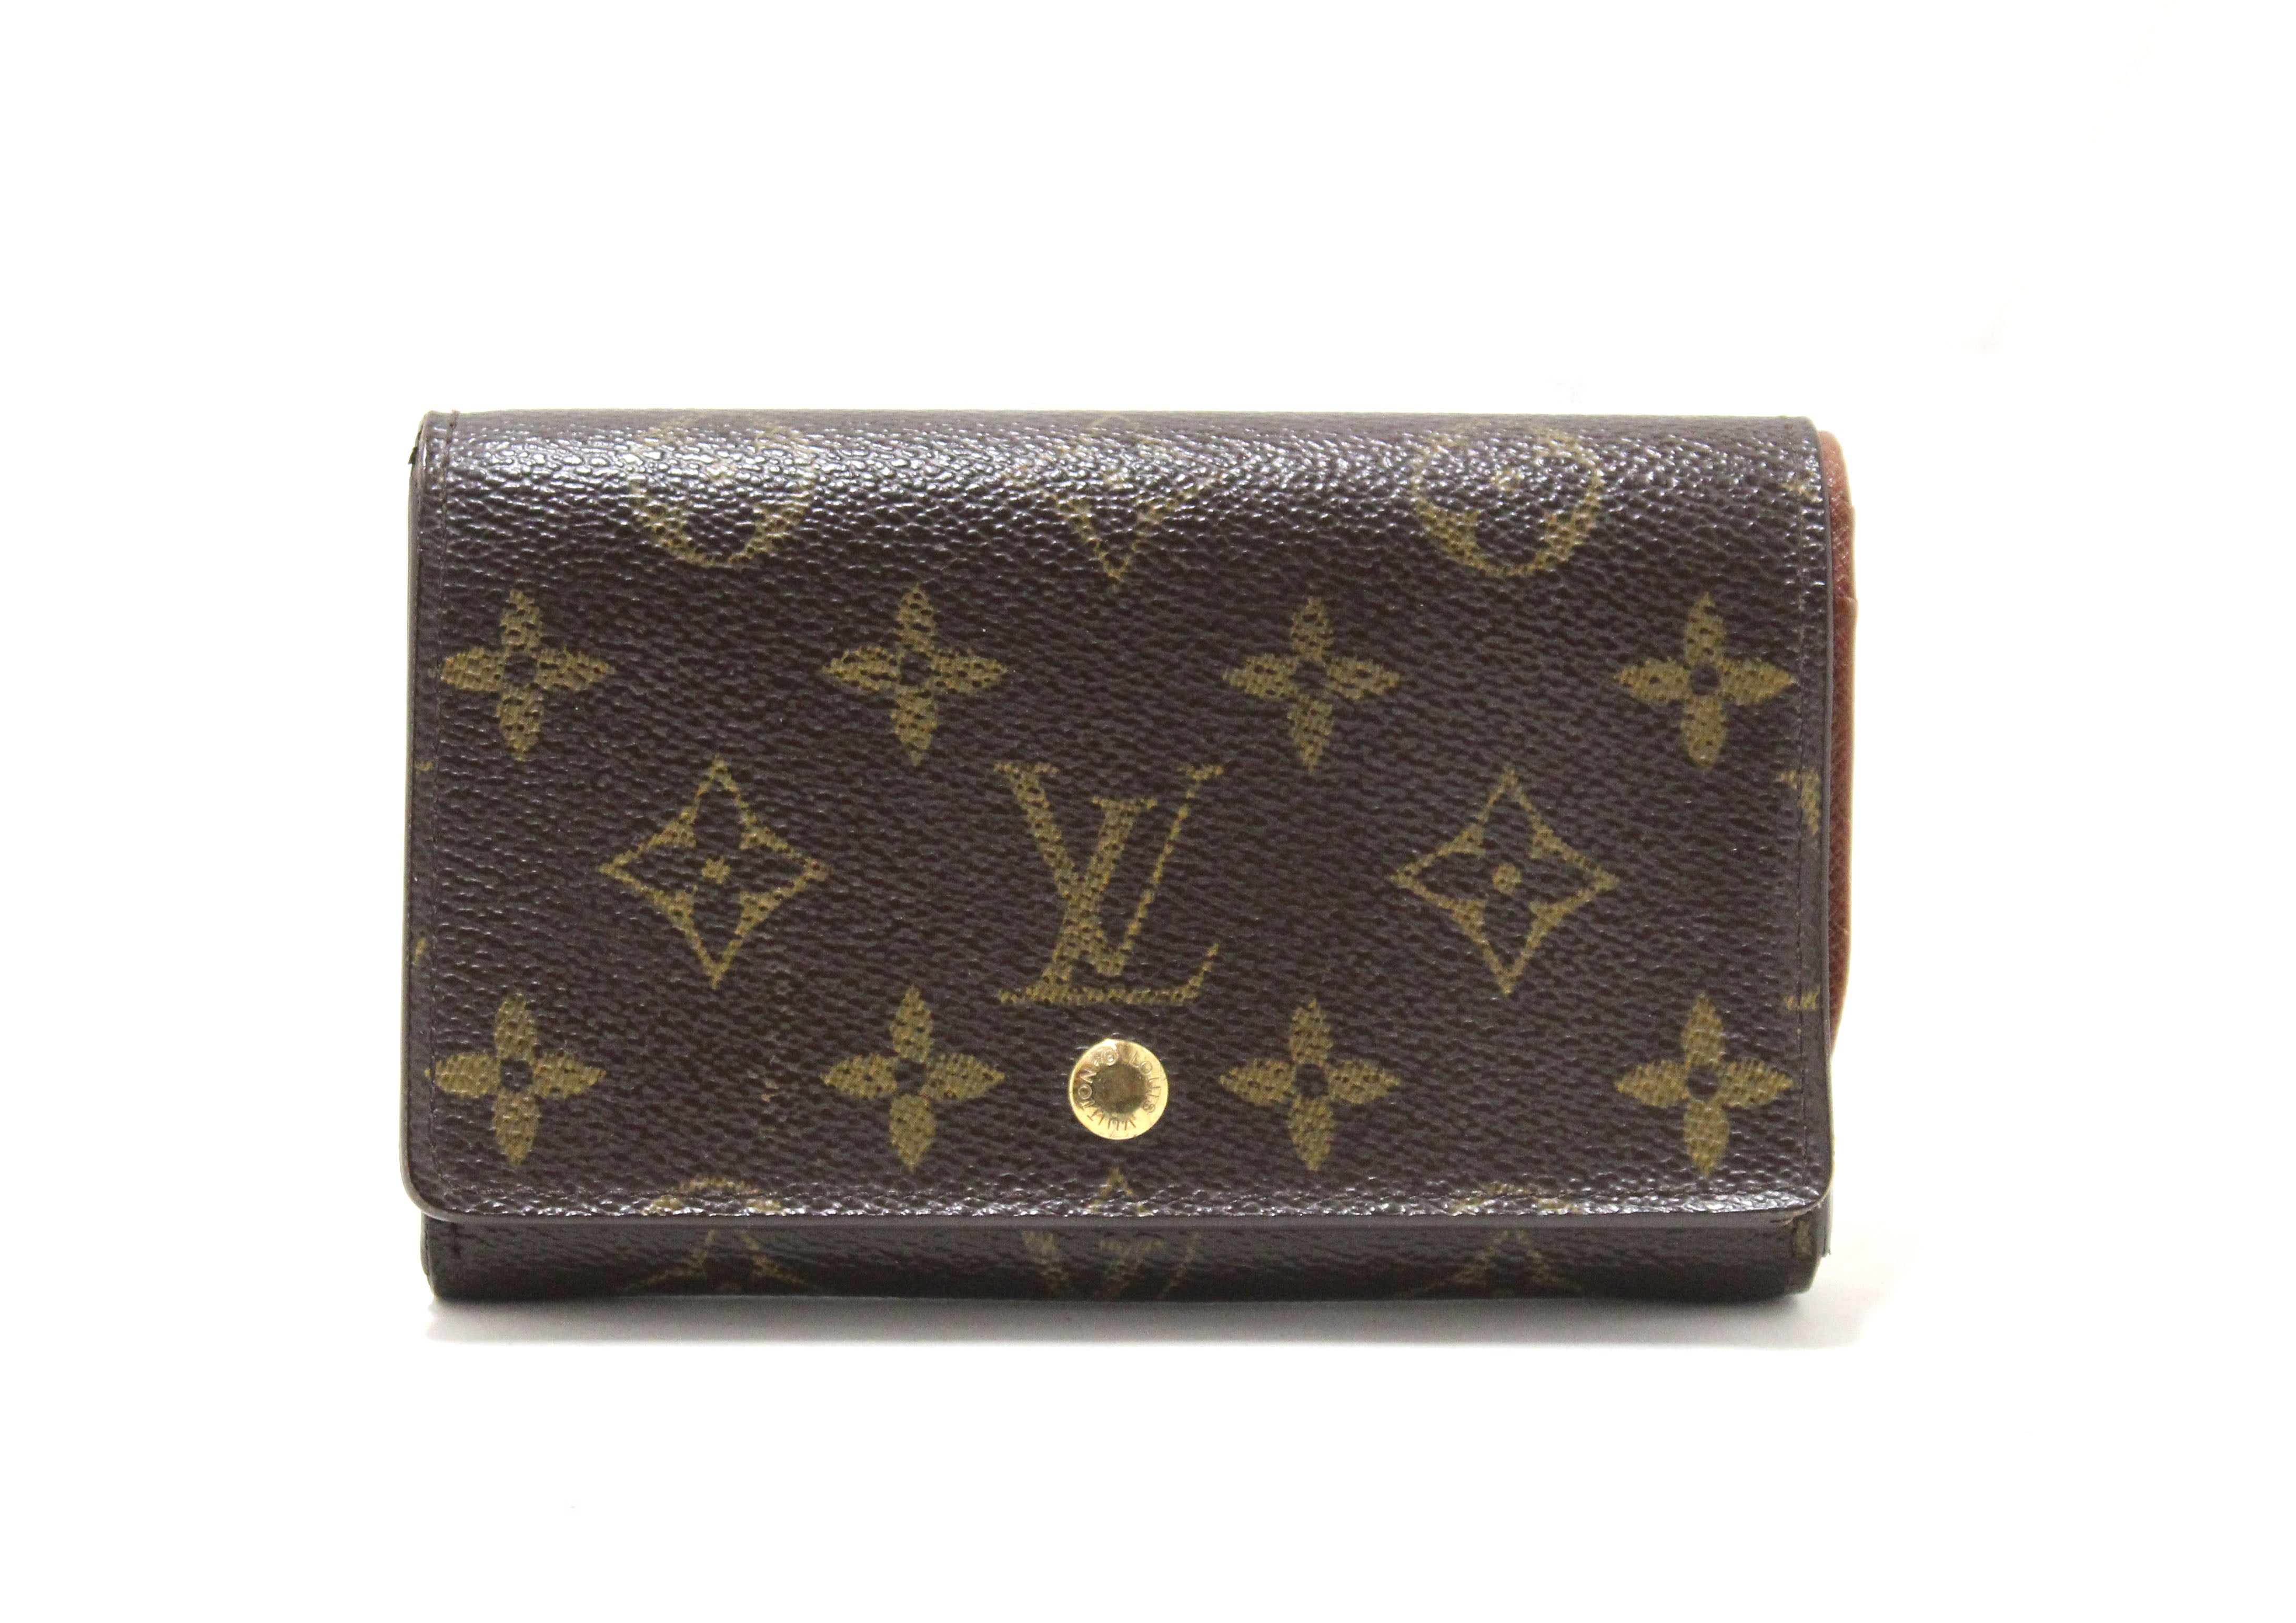 Authentic Louis Vuitton Mono Tresor Wallet